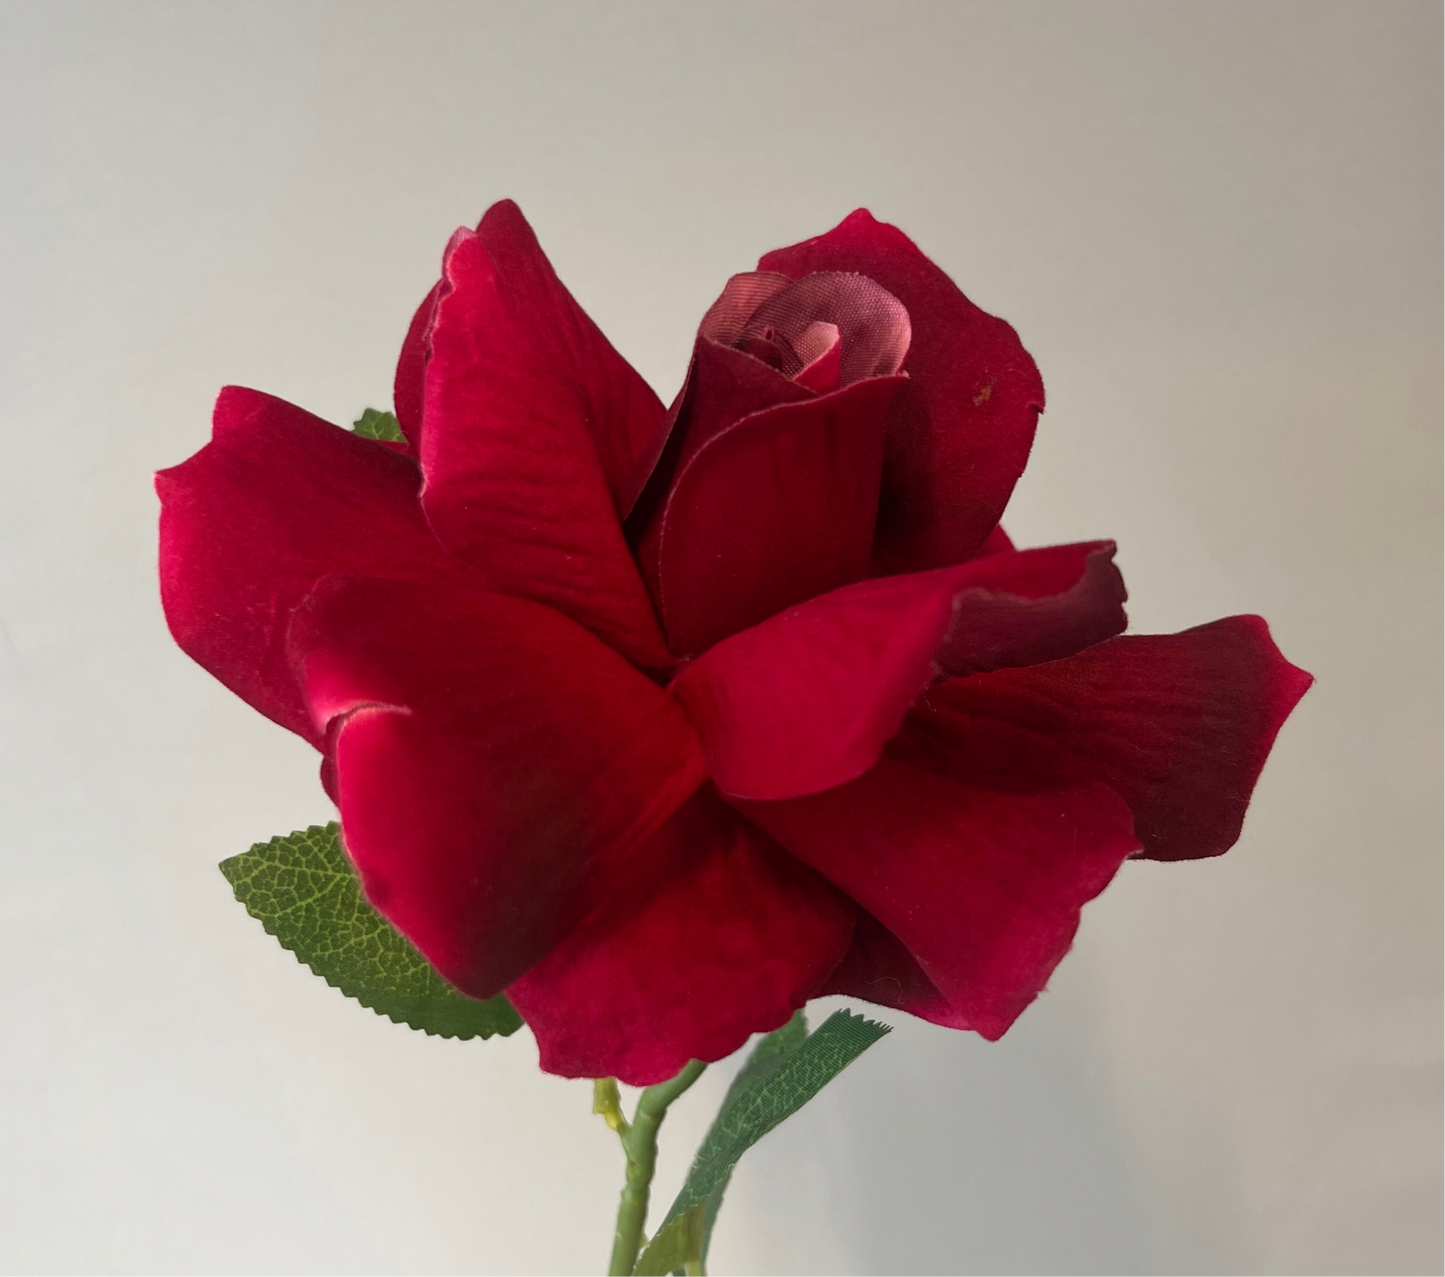 Burgundy Red Velvet Rose Single Stem Artificial Flower Faux Flower